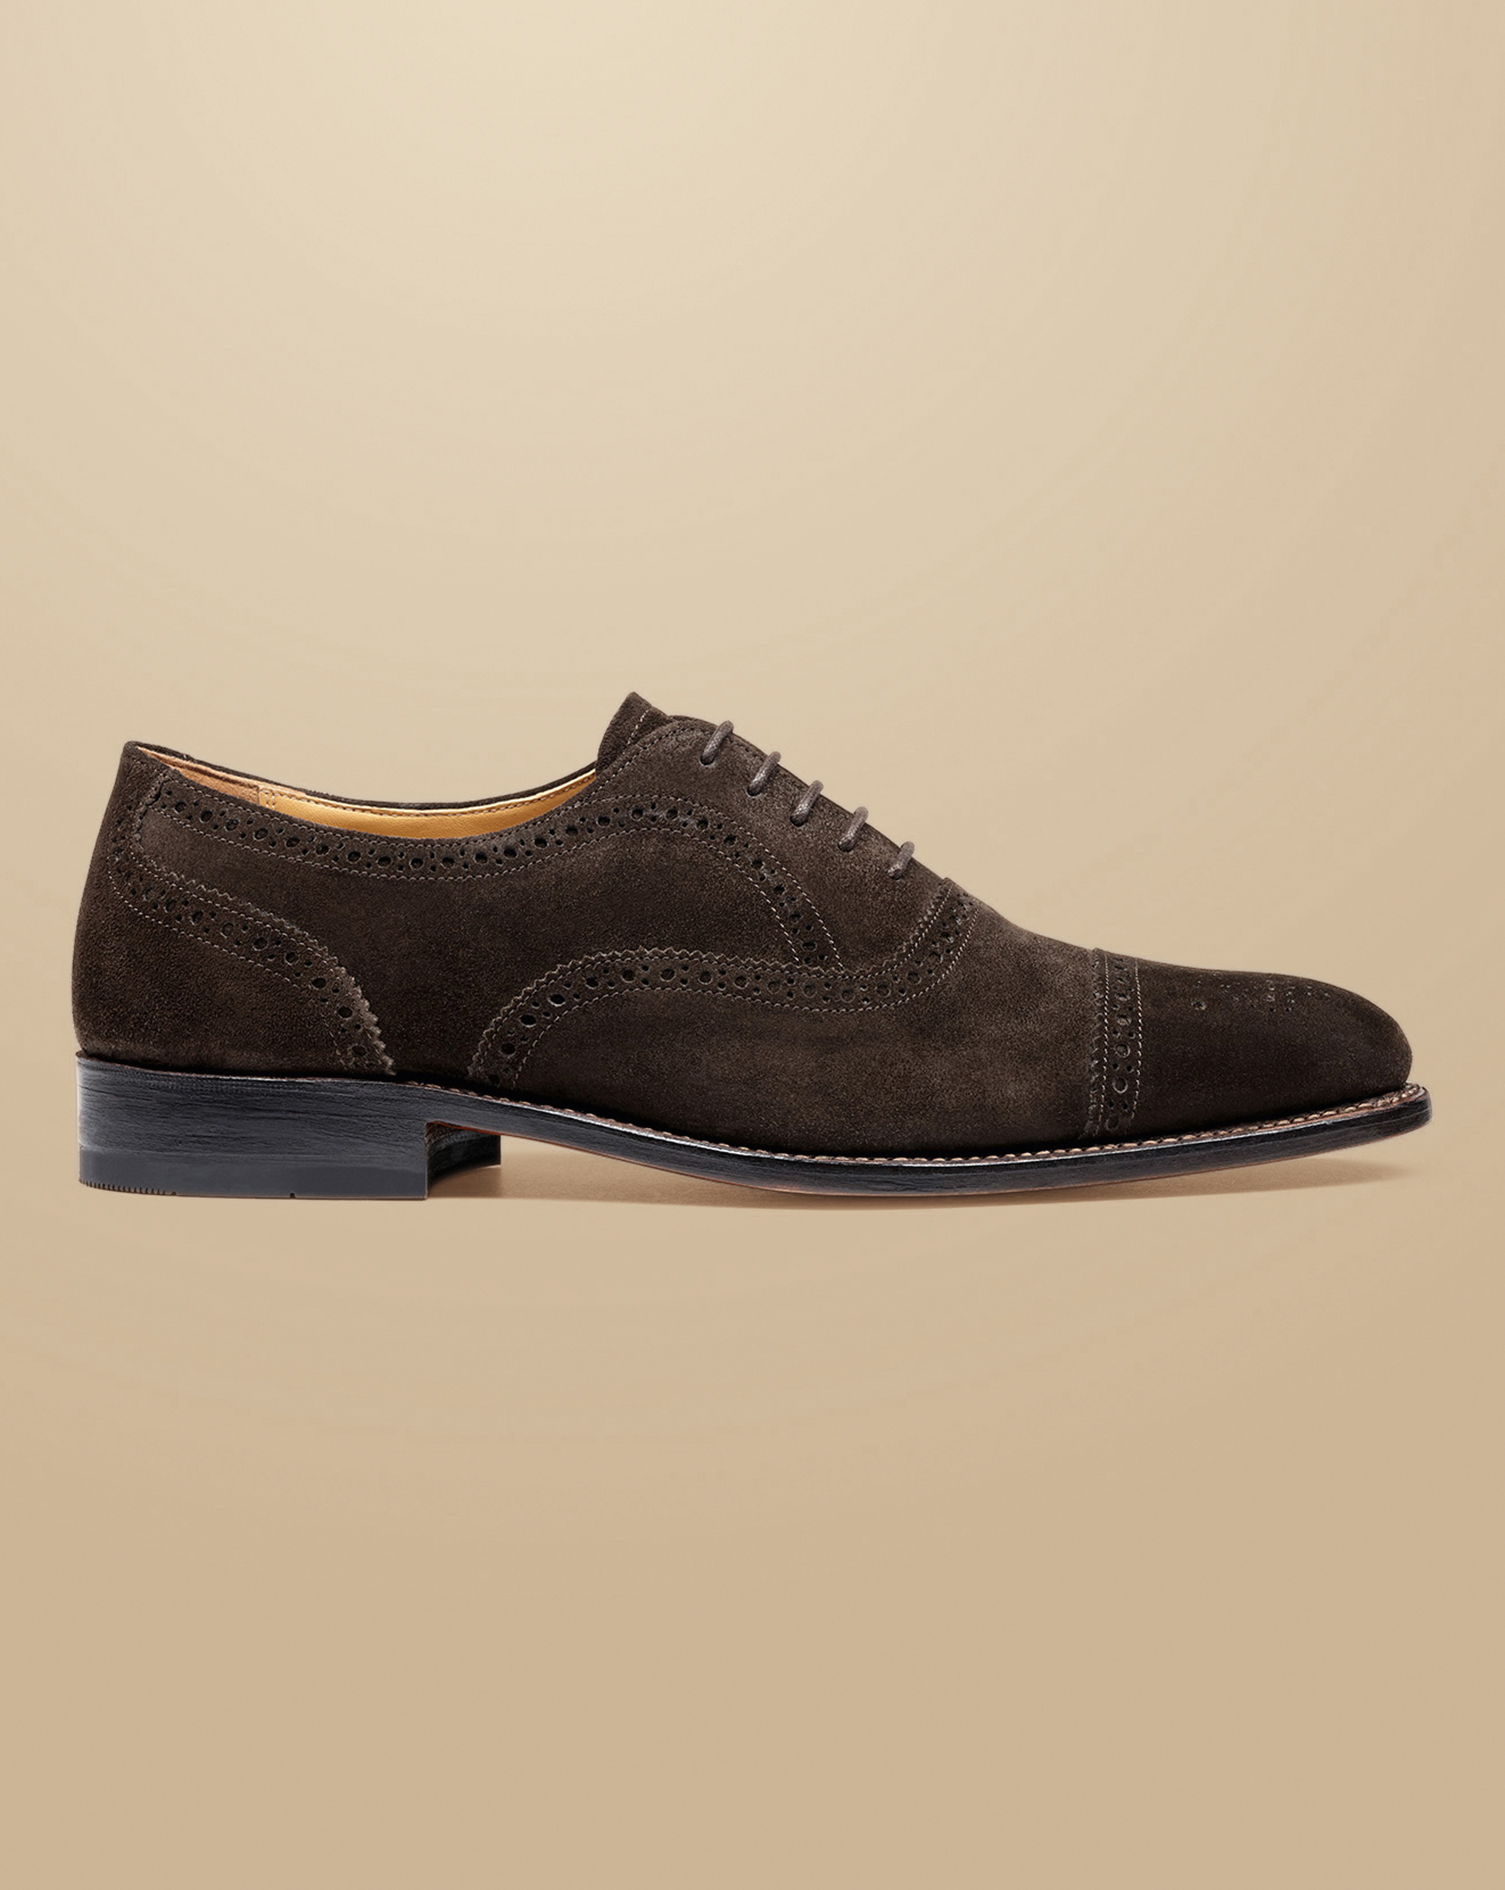 Black Suede/velvet Patent Leather Men Oxford Brogue Shoes 